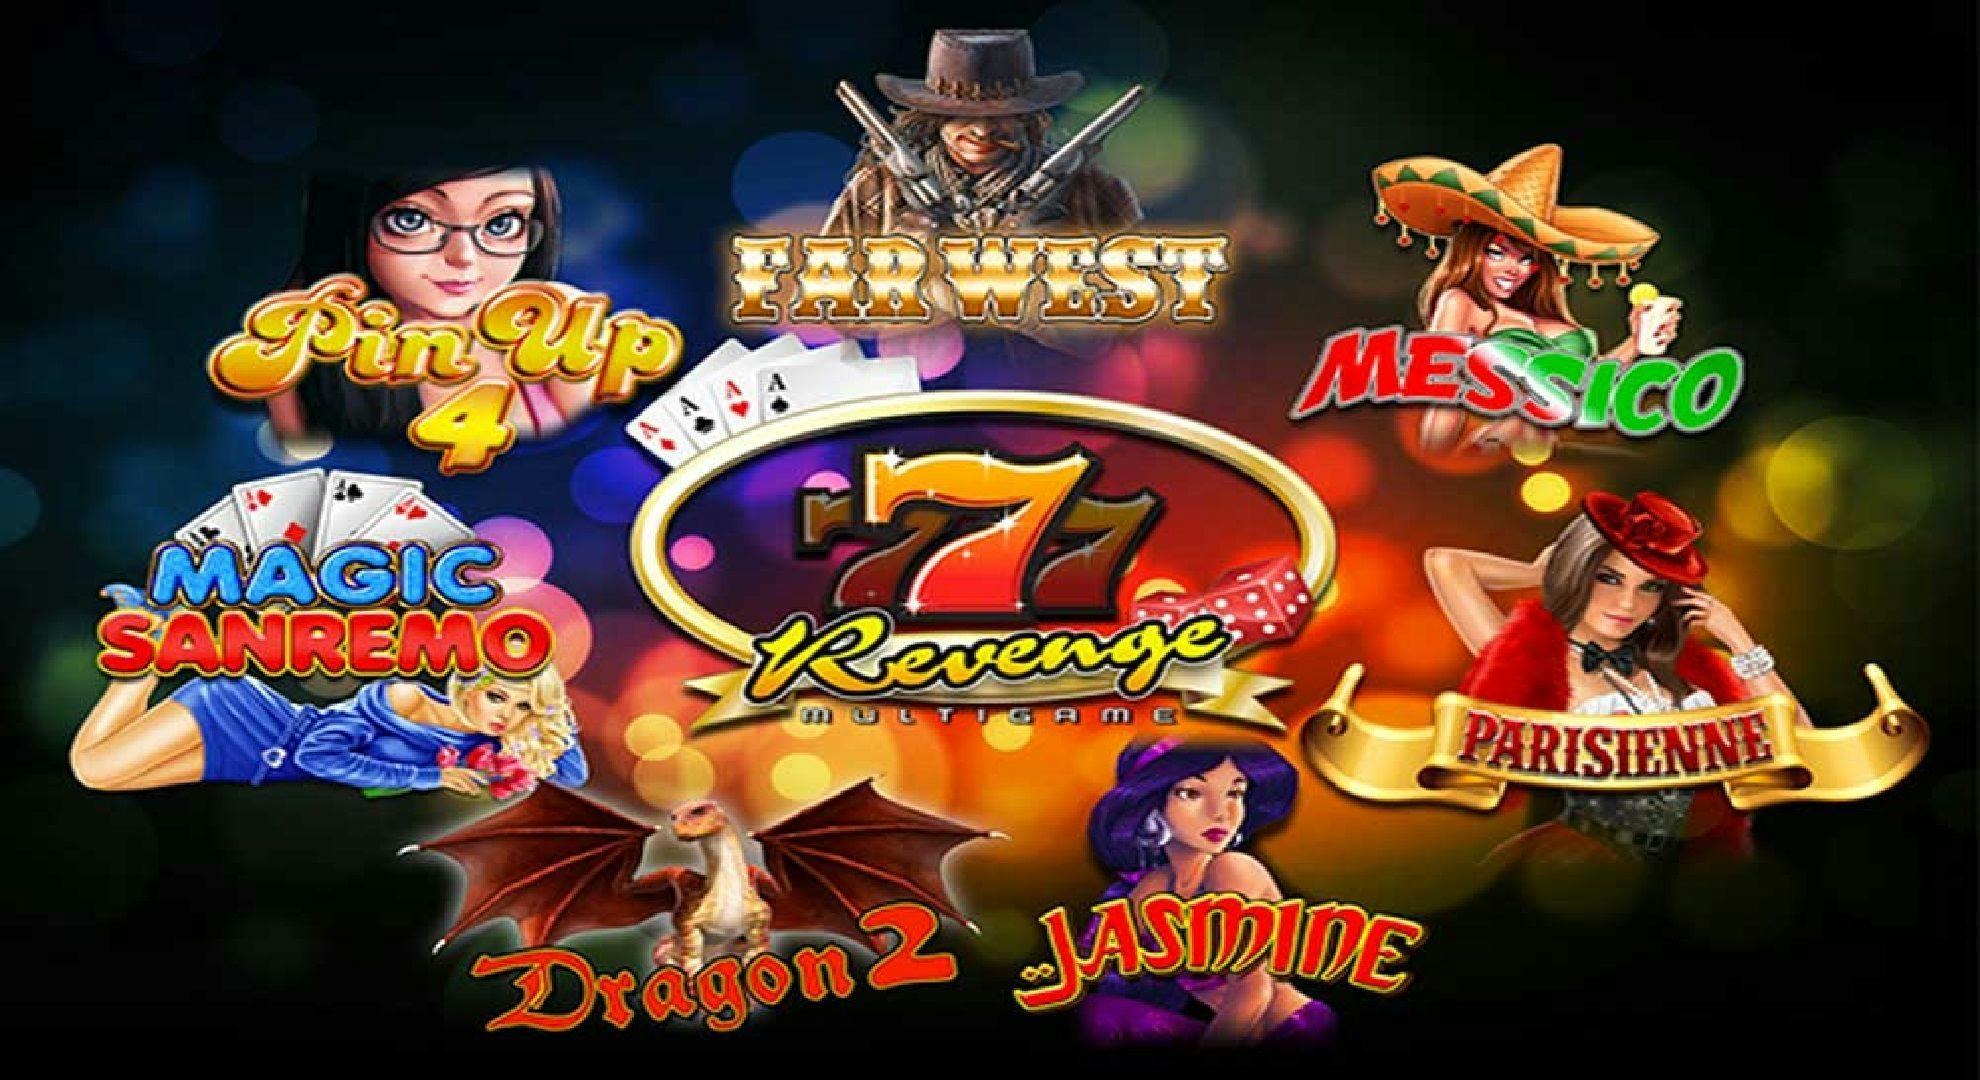 7 Revenge Slot Online Free Play